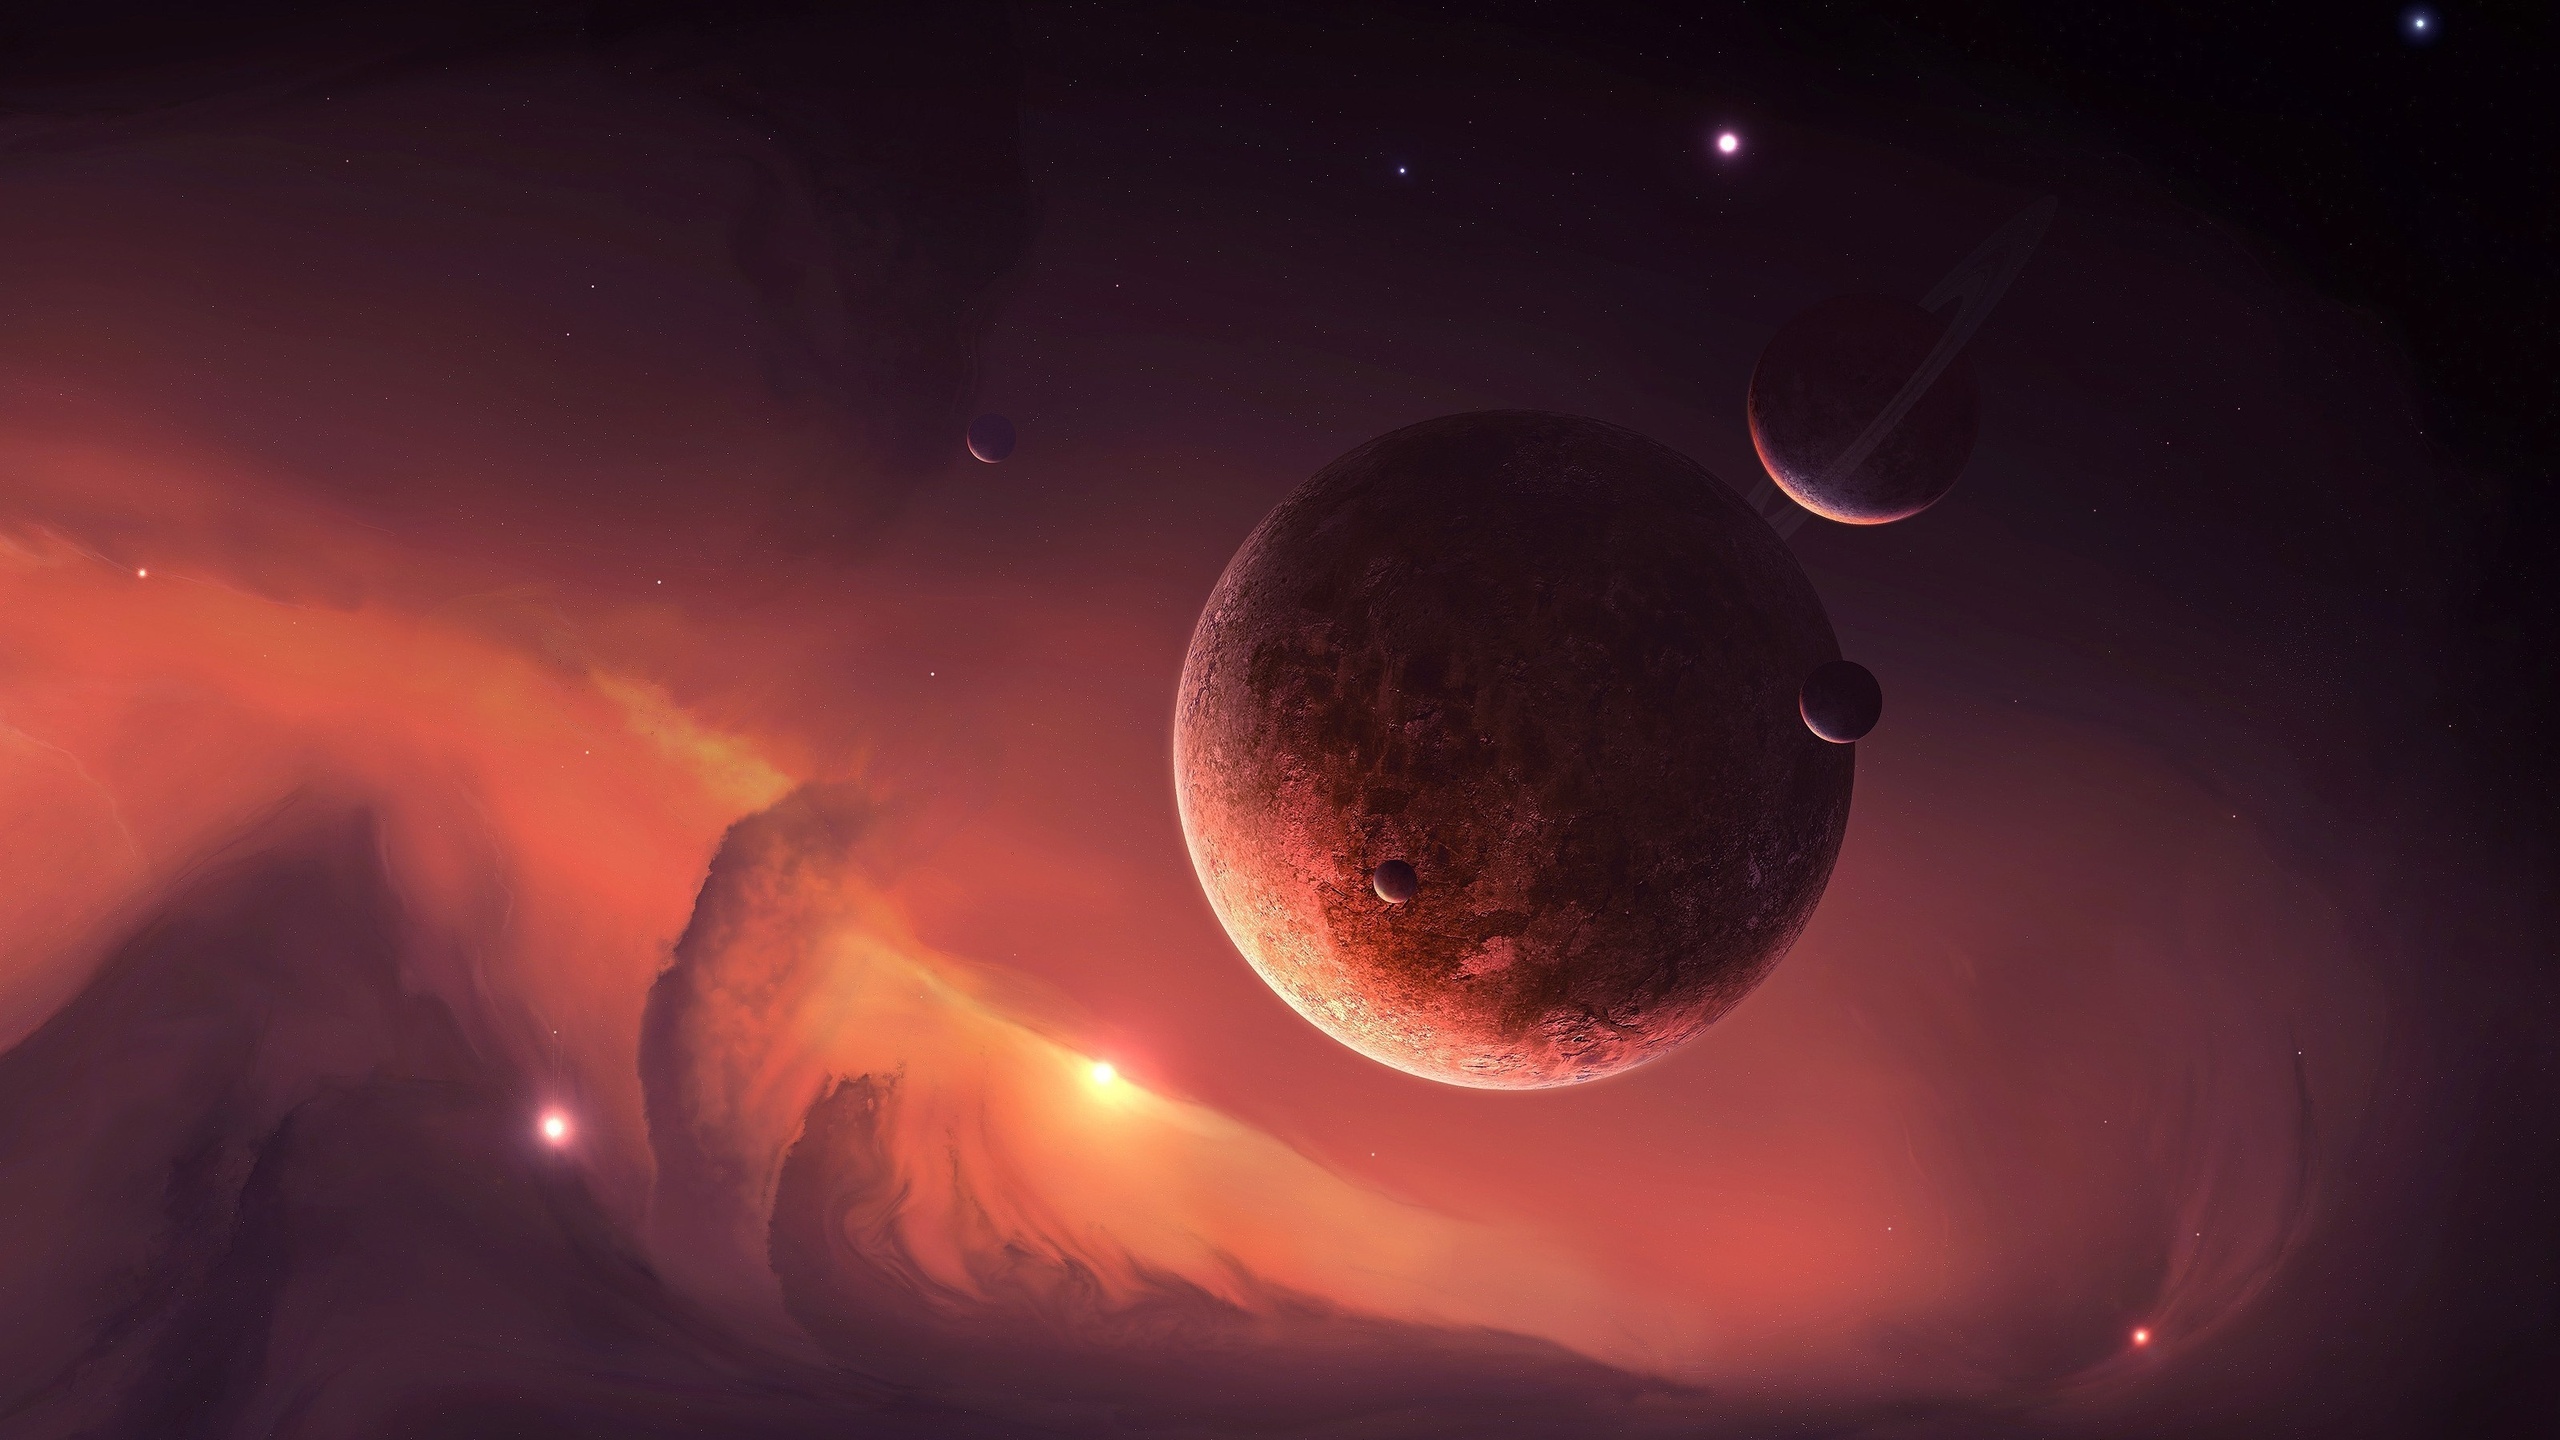 تصویر زمینه تماشایی از کهکشان و سیاره ها با تناژ نارنجی